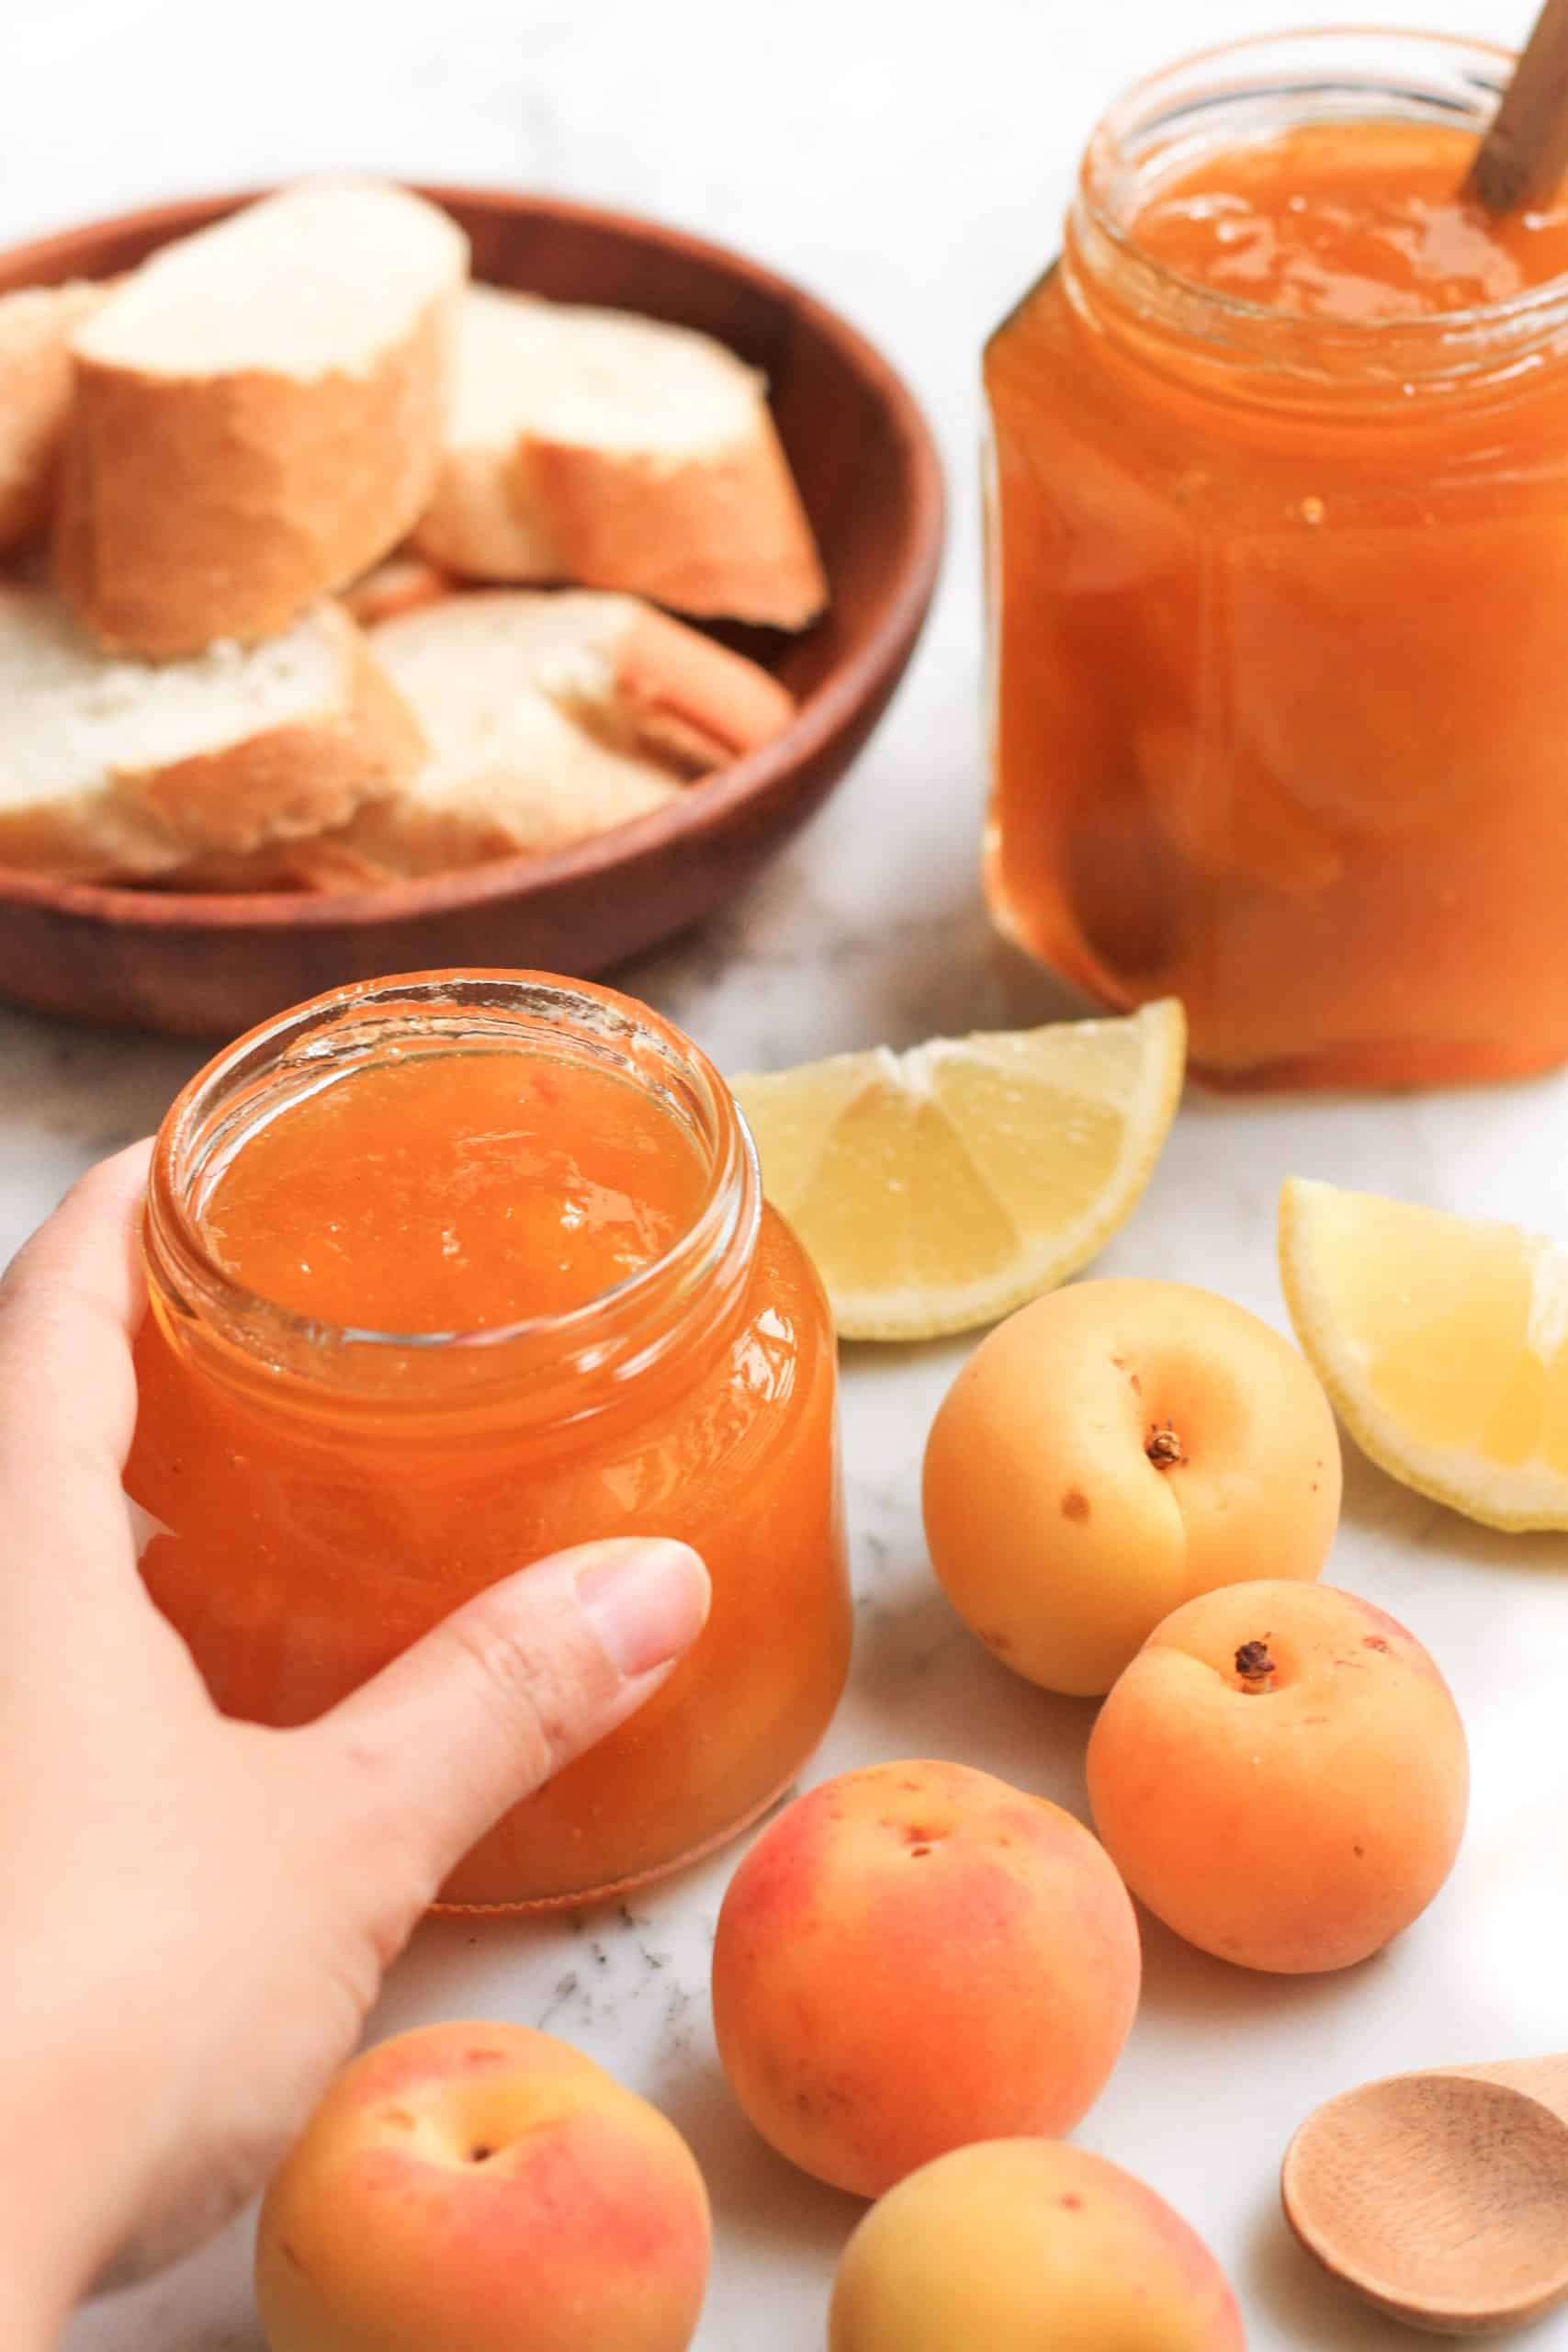 Easy-Apricot-Jam-Gluten-free-Vegan13-1-scaled.jpg (94 KB)